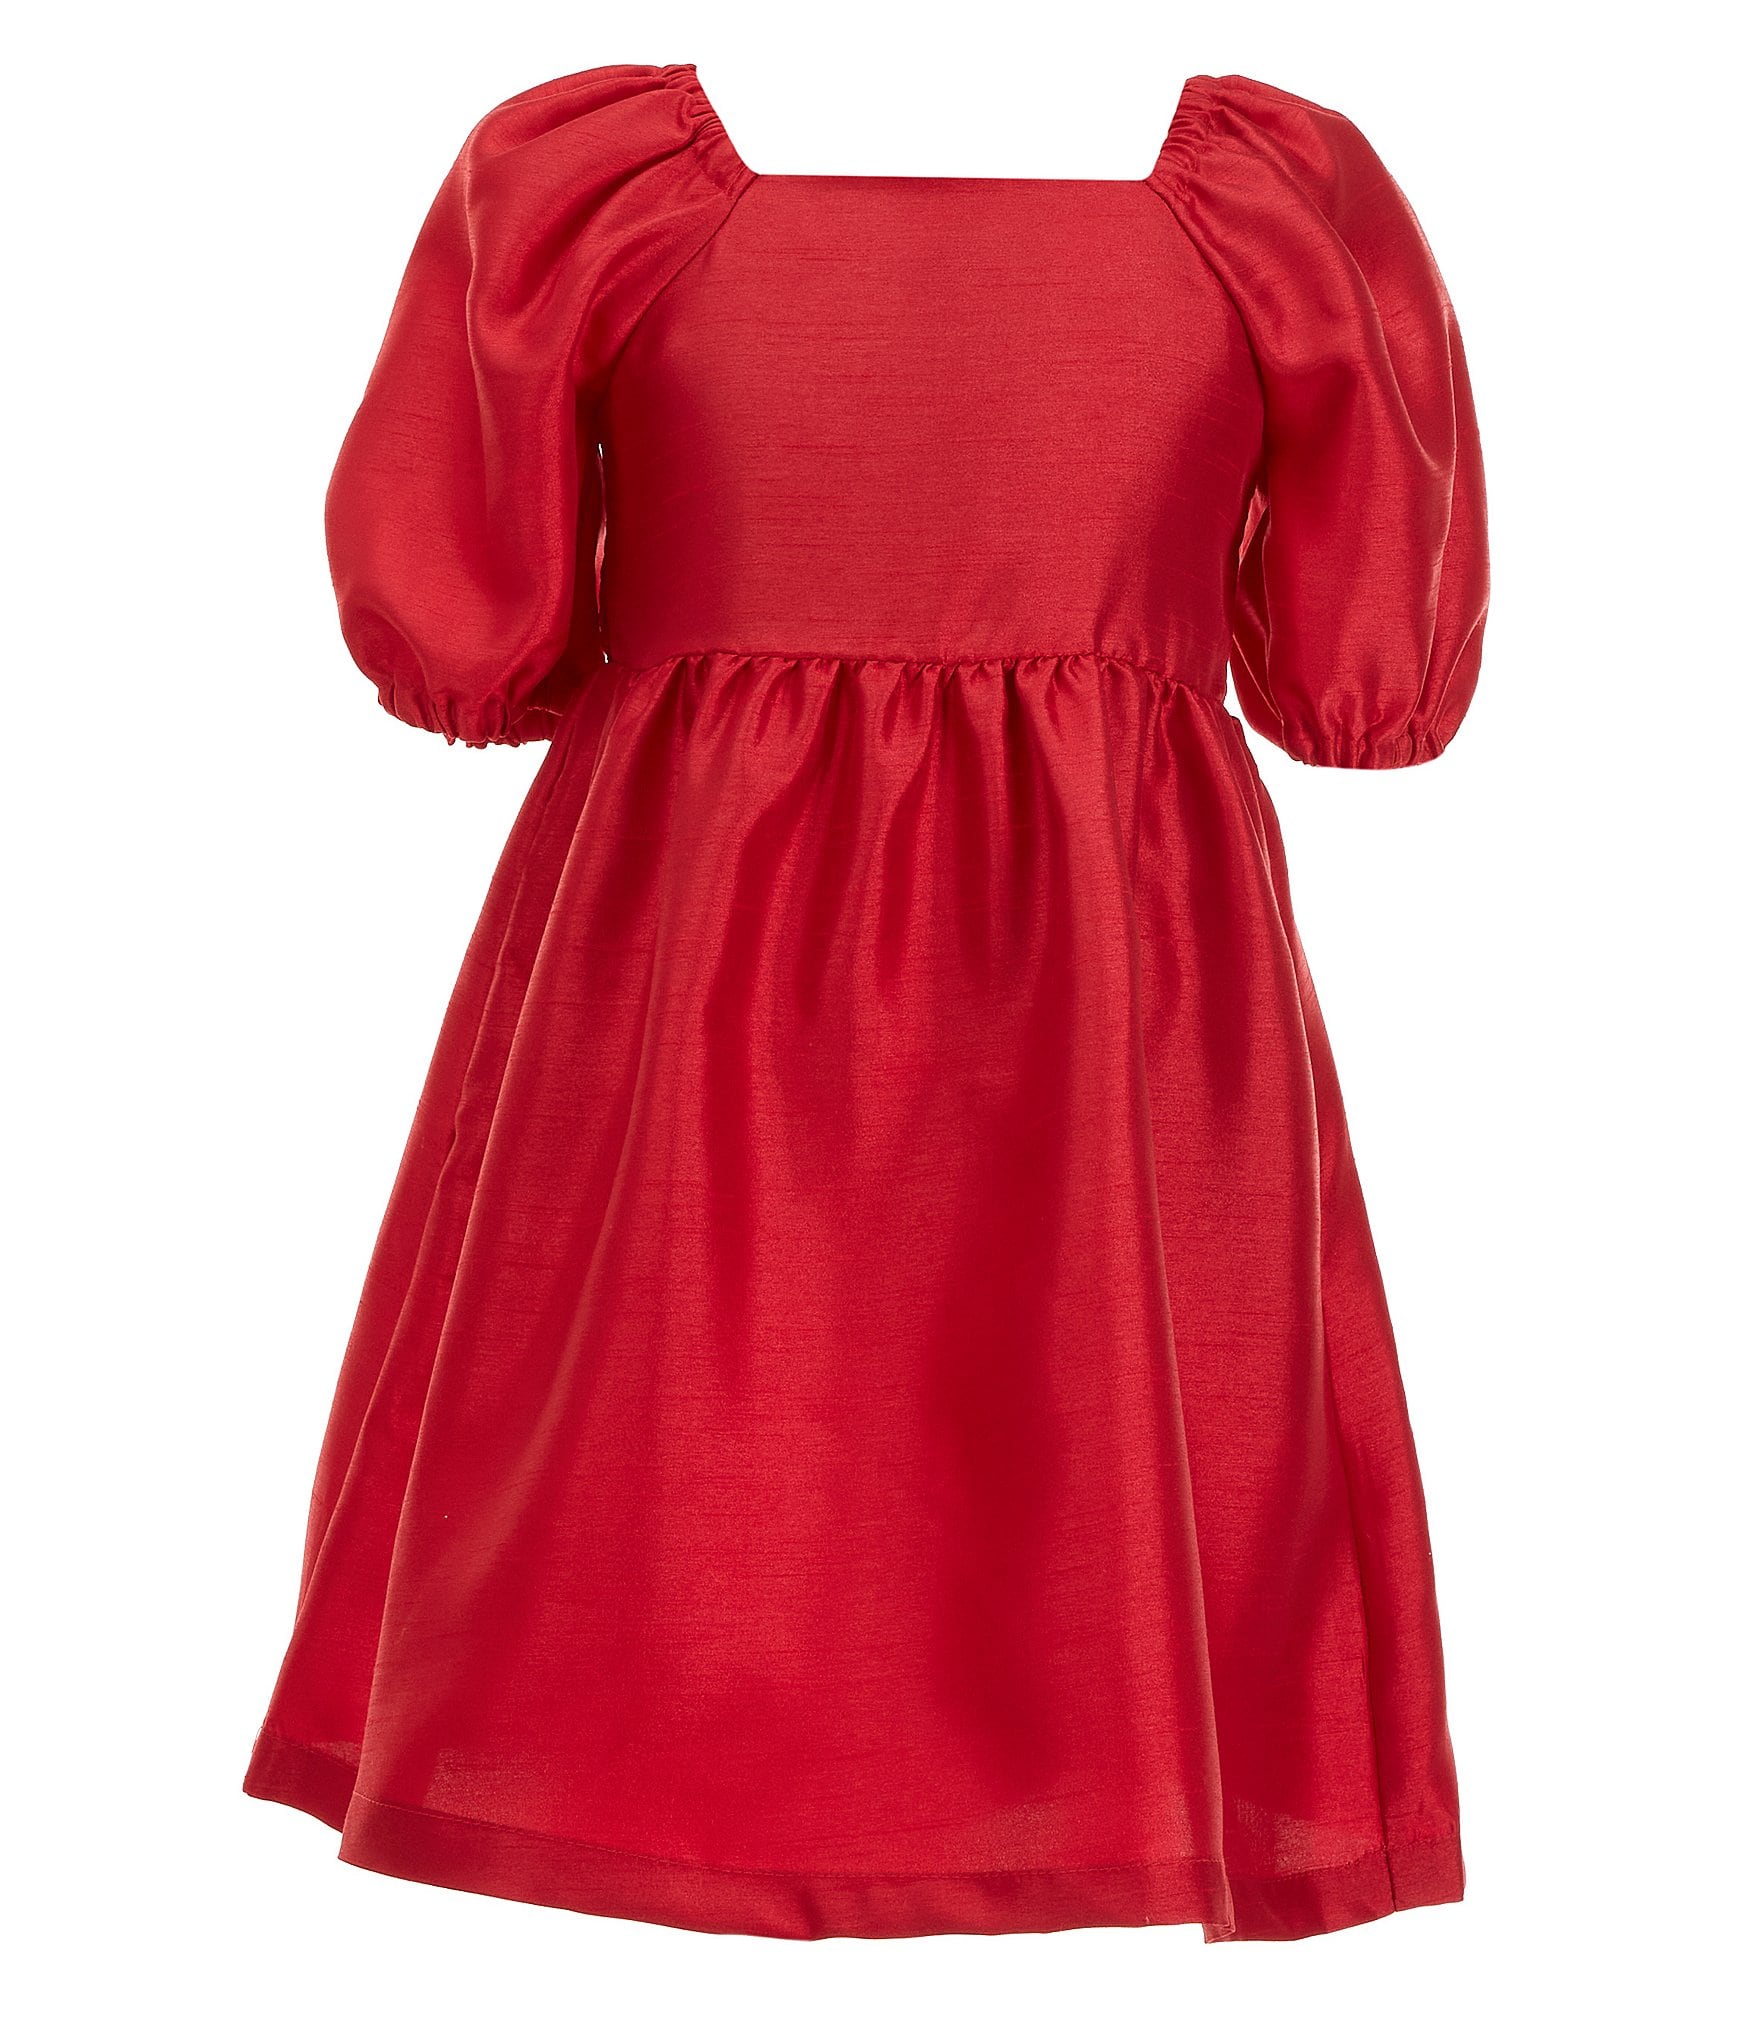 Copper Key Little Girls 2T-6X Taffeta Dress | Dillard's